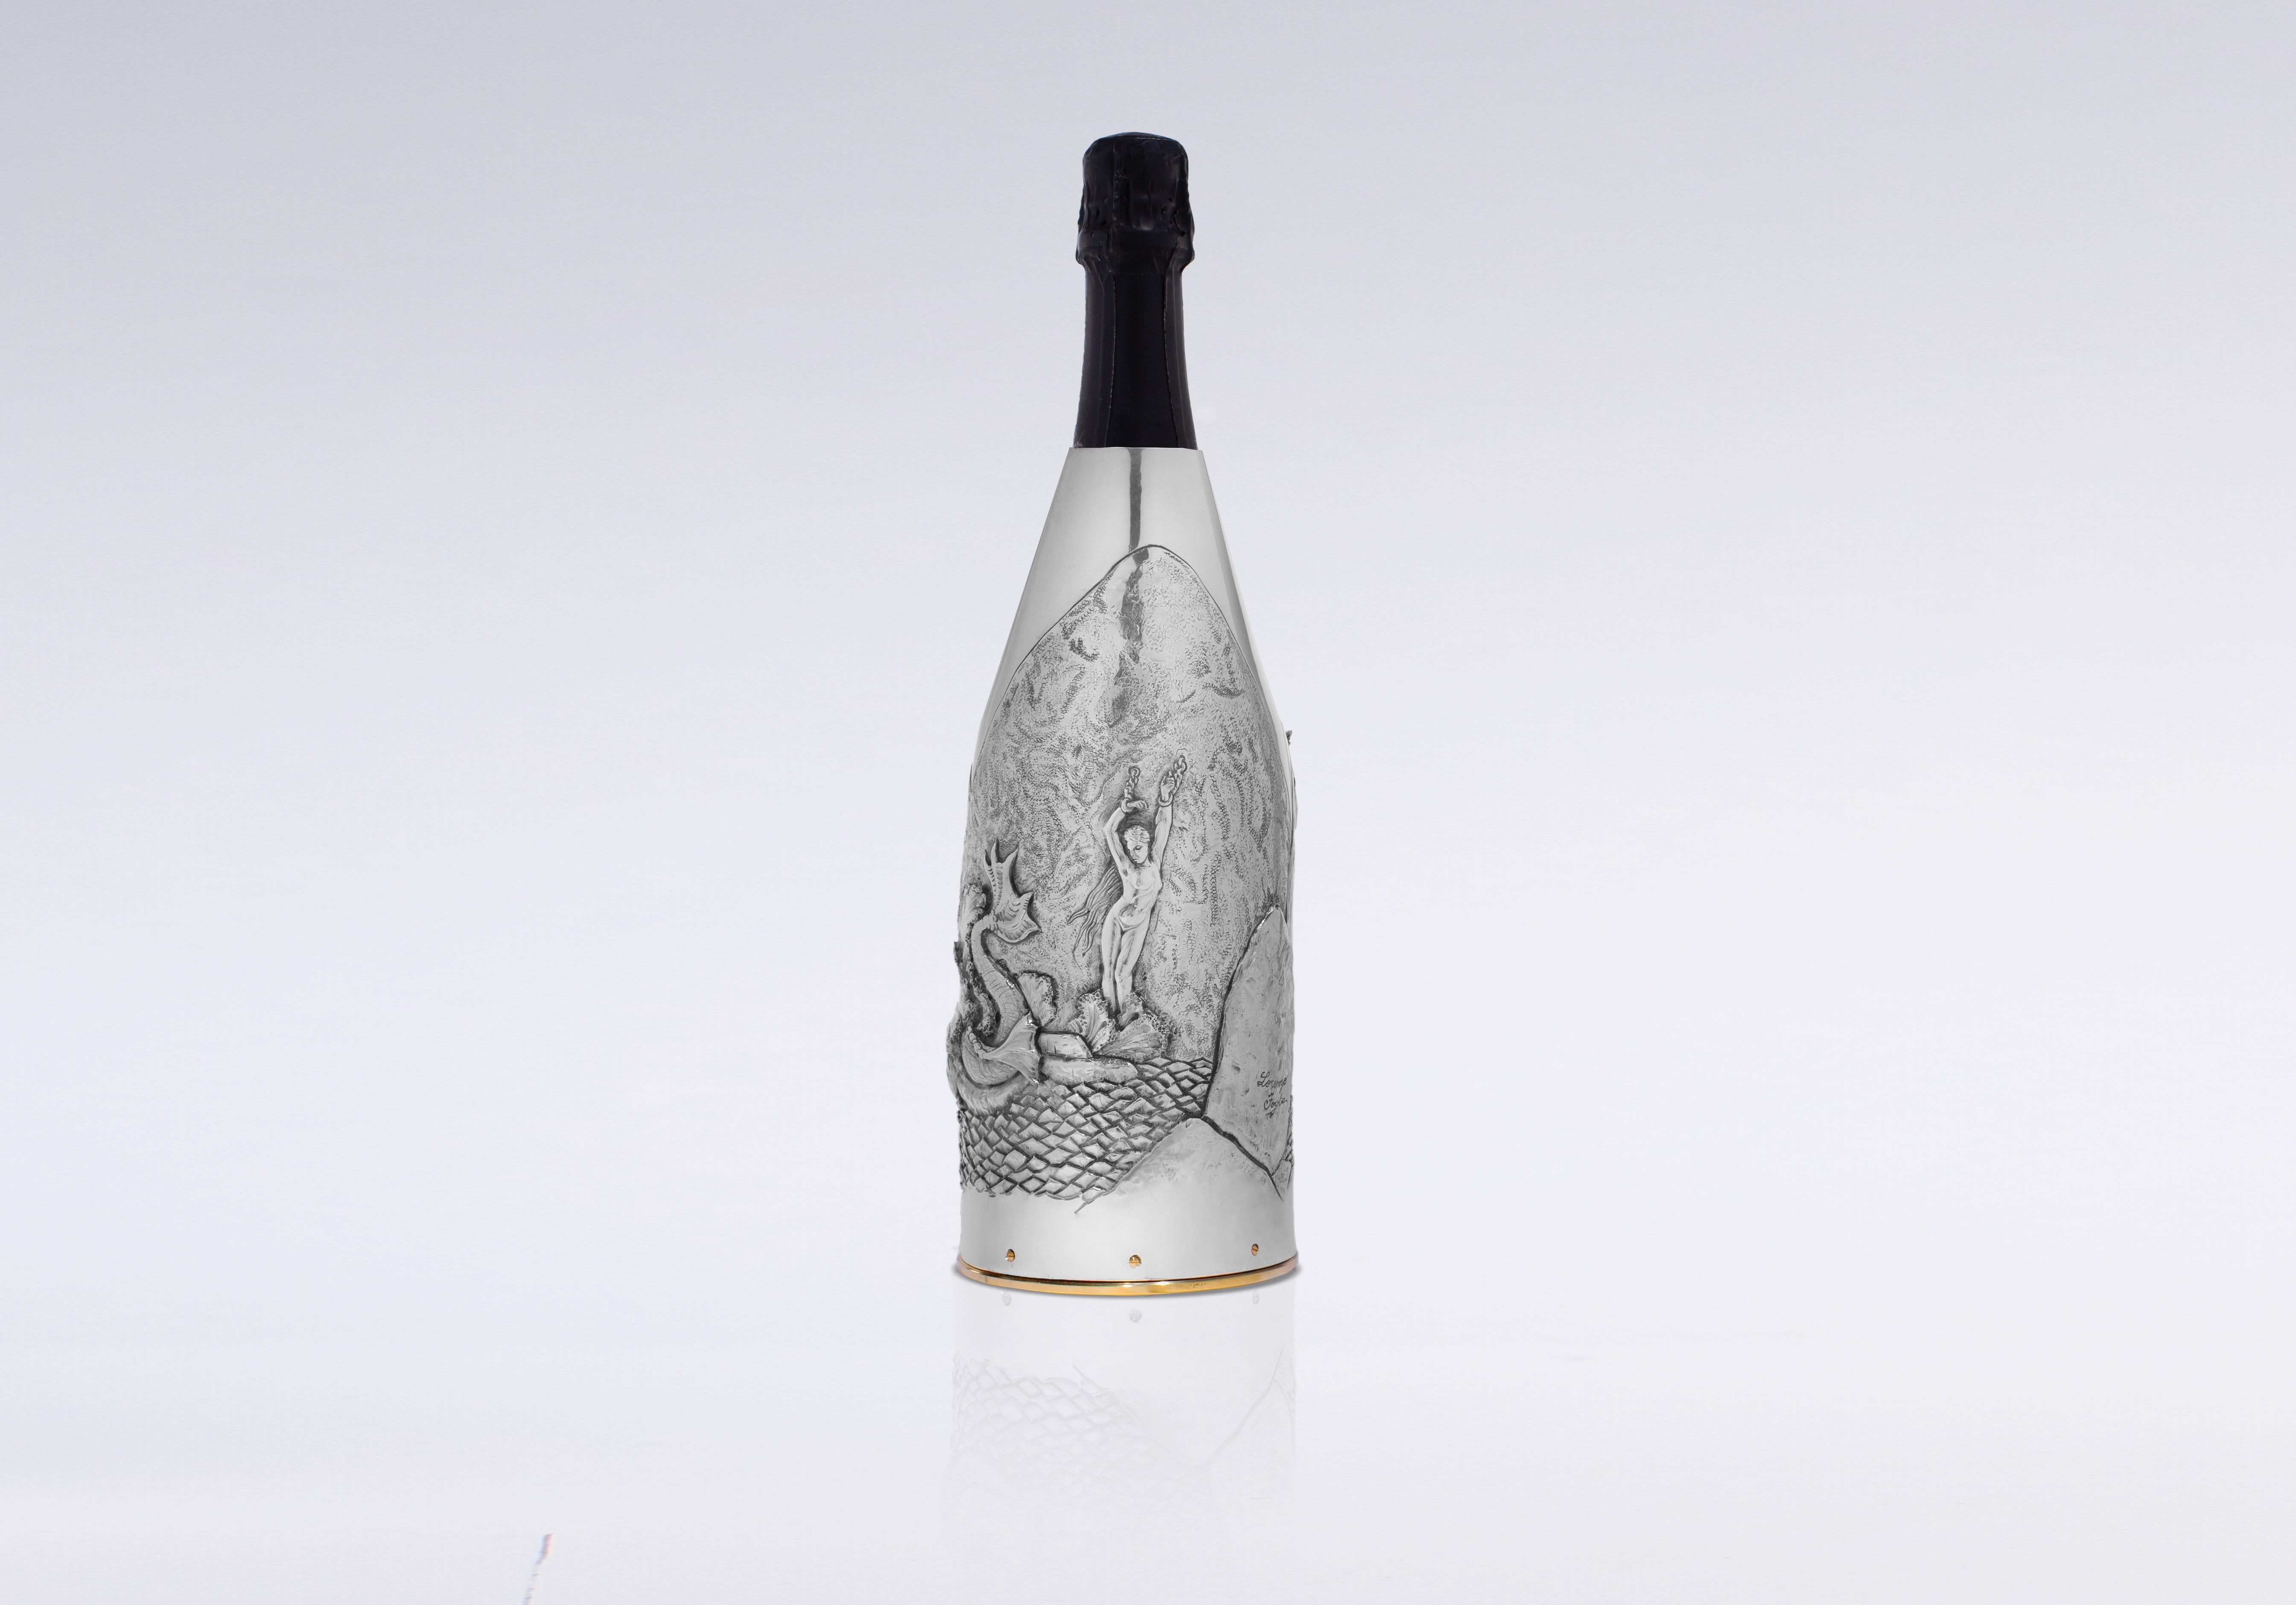 Dieser Champagnerdeckel ist eine bemerkenswerte Ergänzung zu unserer K-OVER Art Kollektion.

Gefertigt aus reinem Silber 999/°°, hat der Künstler eine Szene aus dem Epos 